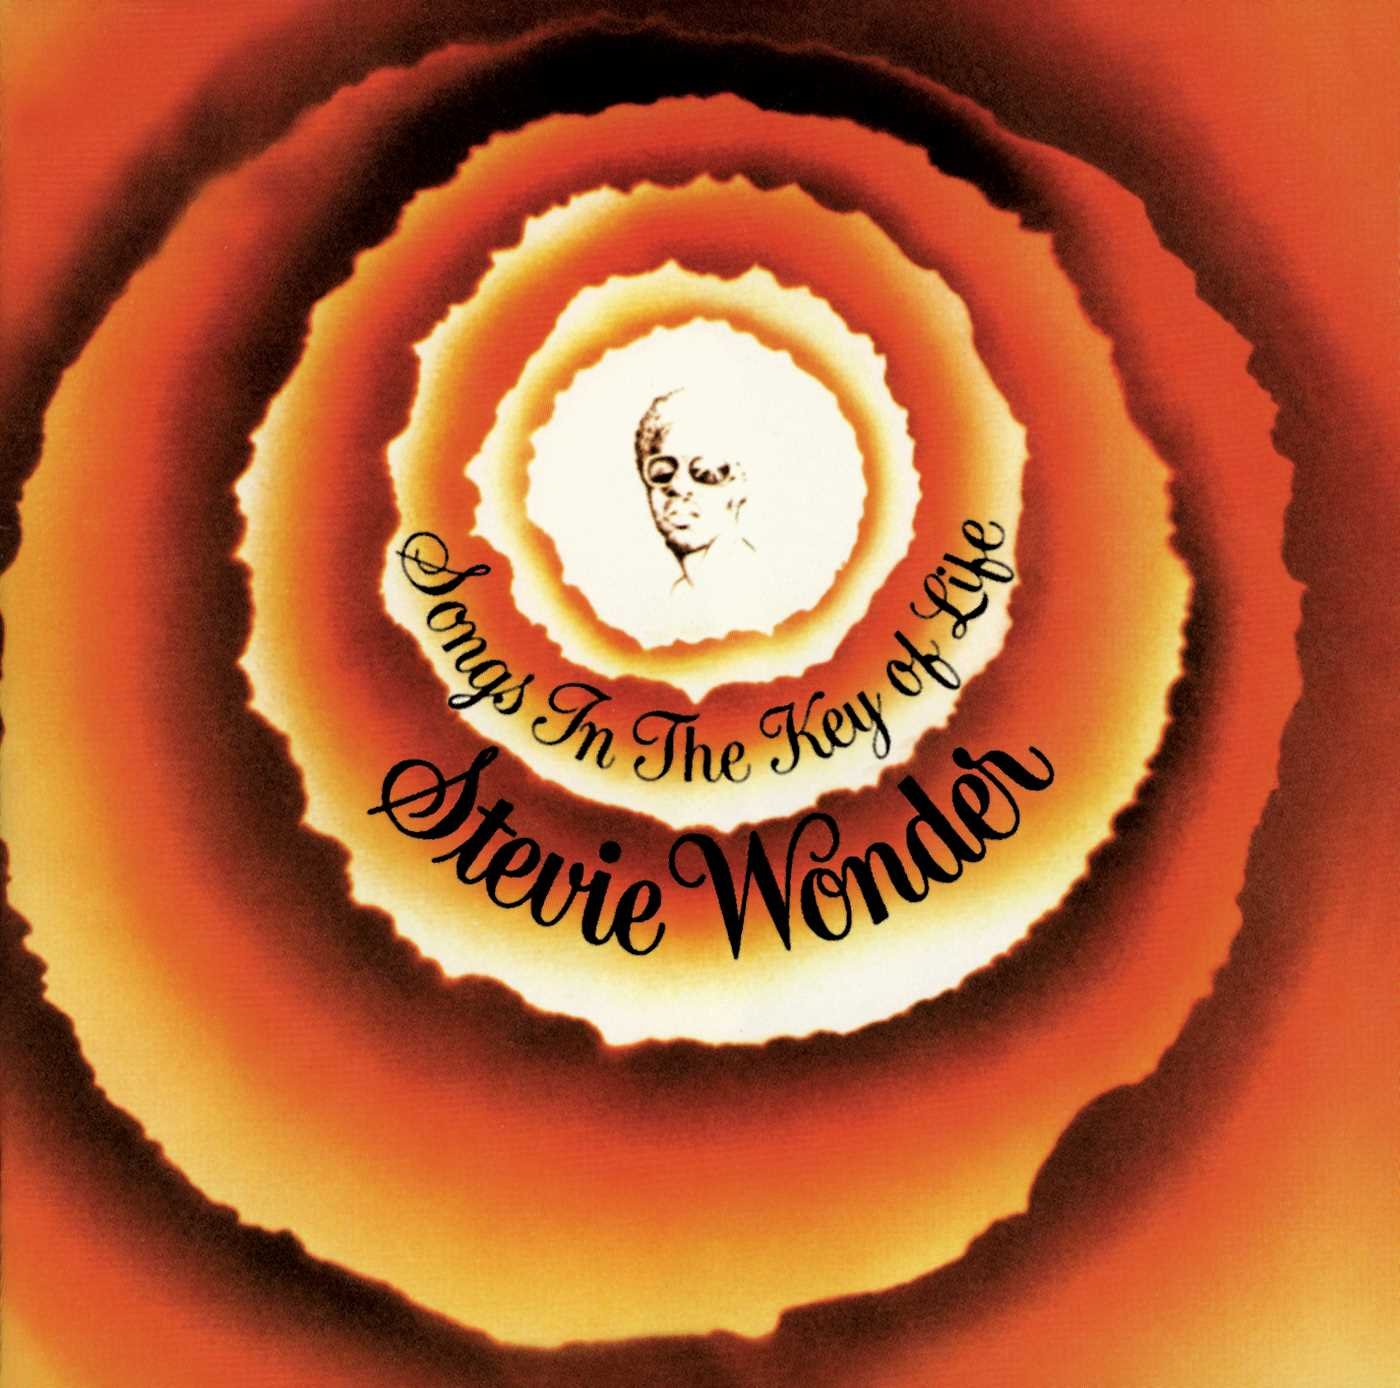 Stevie Wonder - Songs In The Key Of Life (Vinyl 2LP)